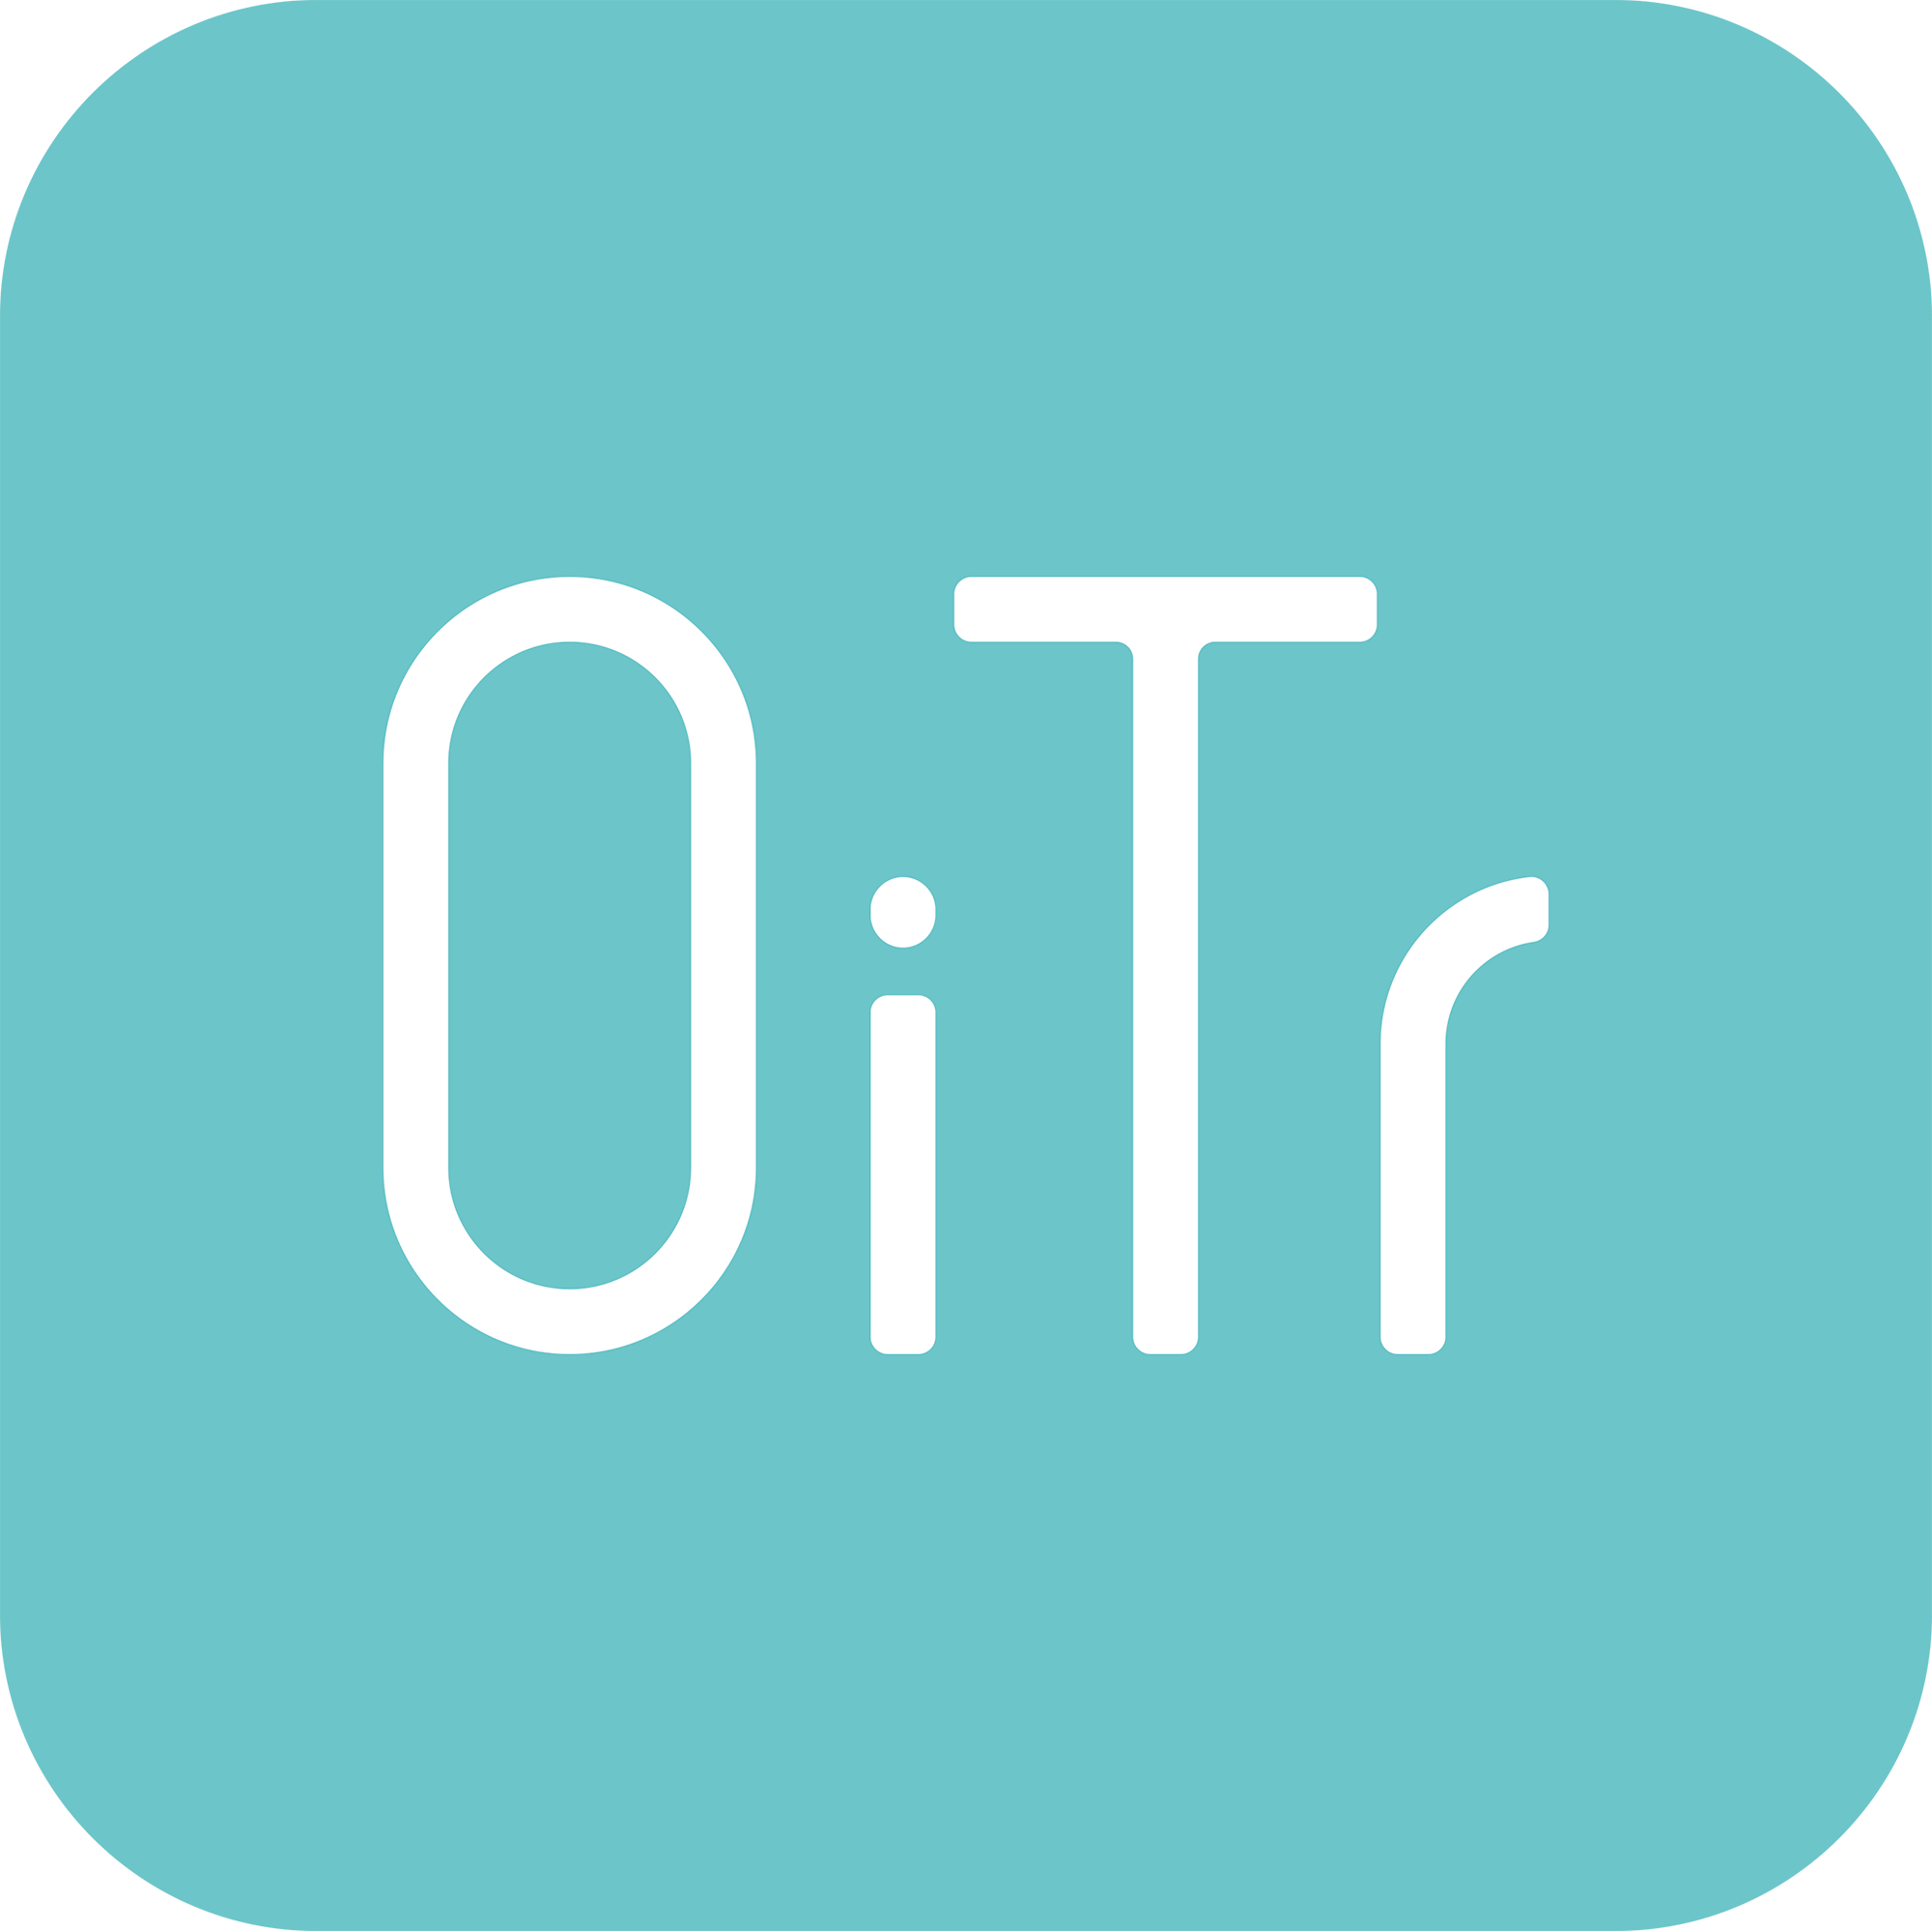 生理用ナプキン「OiTr（オイテル）」について